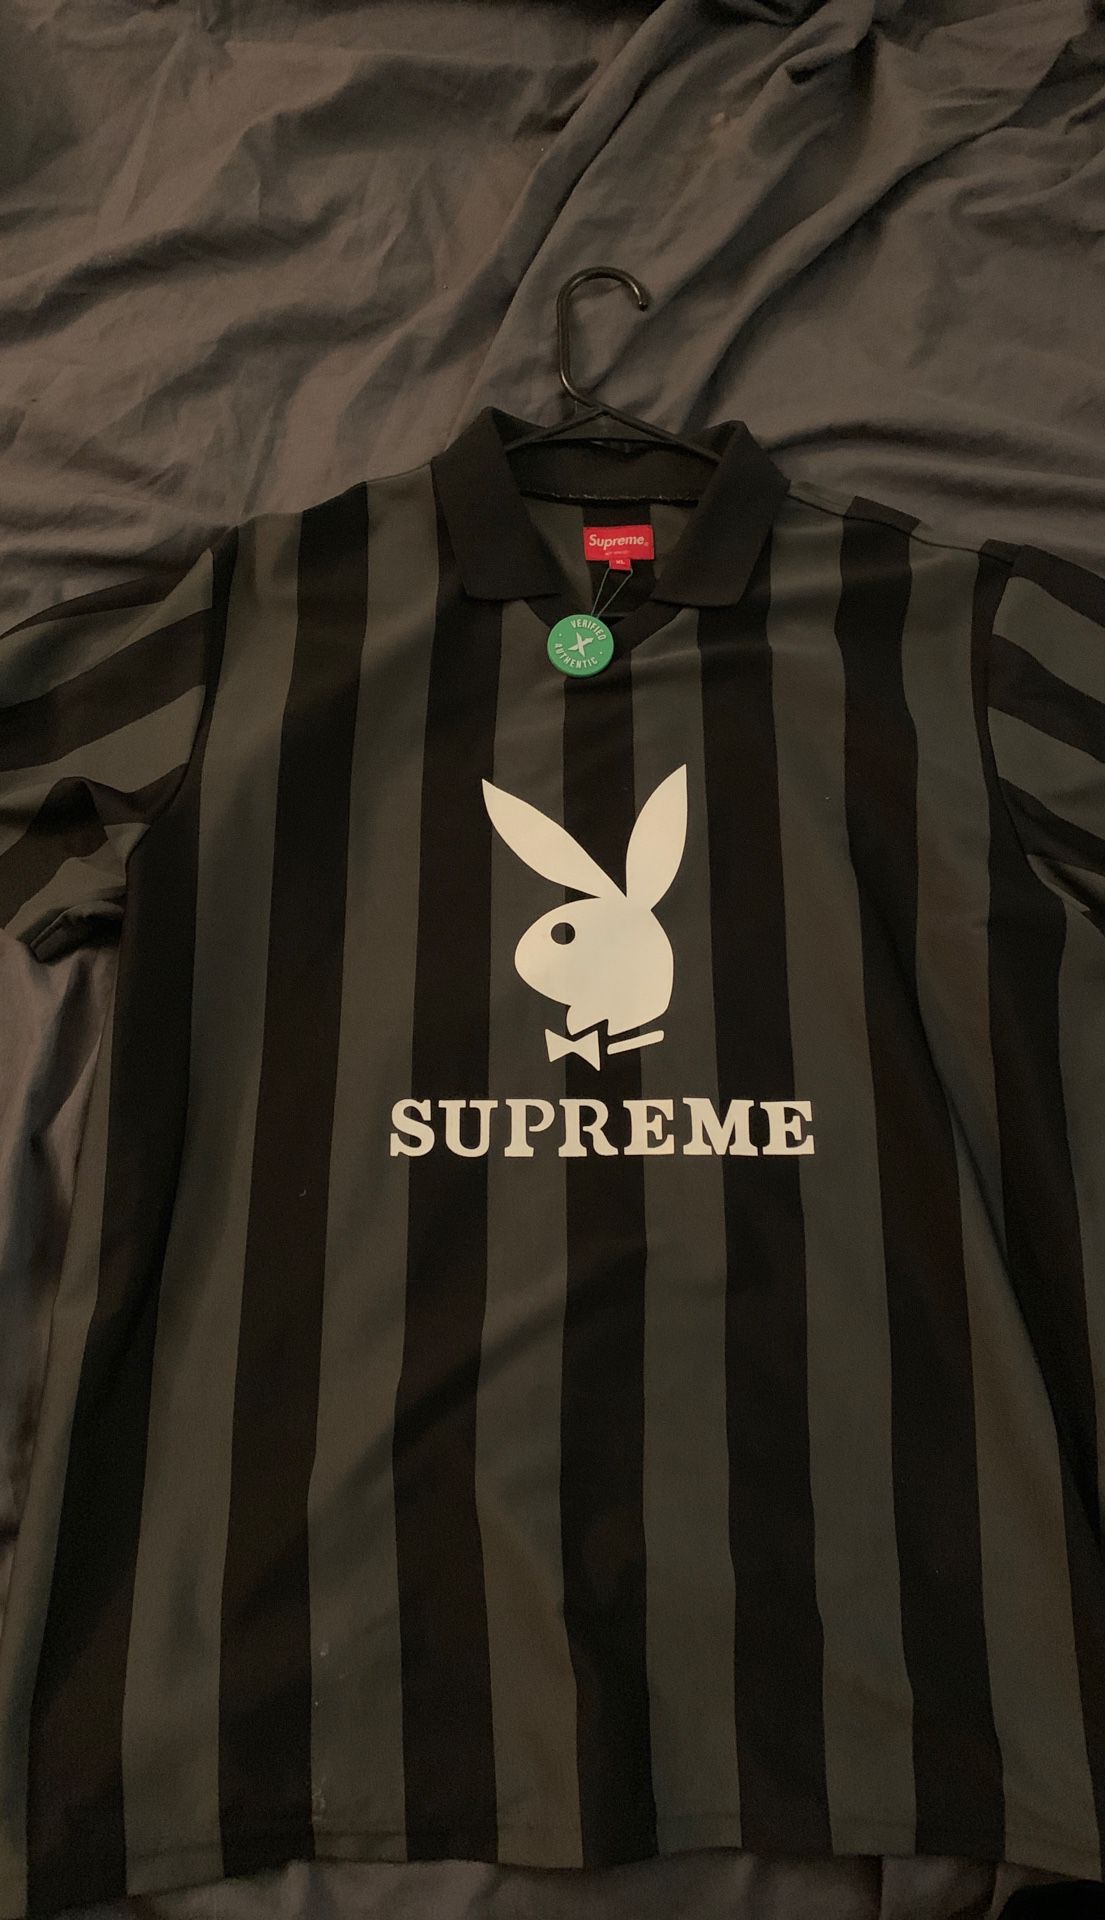 Supreme x Playboy Jersey (size XL)